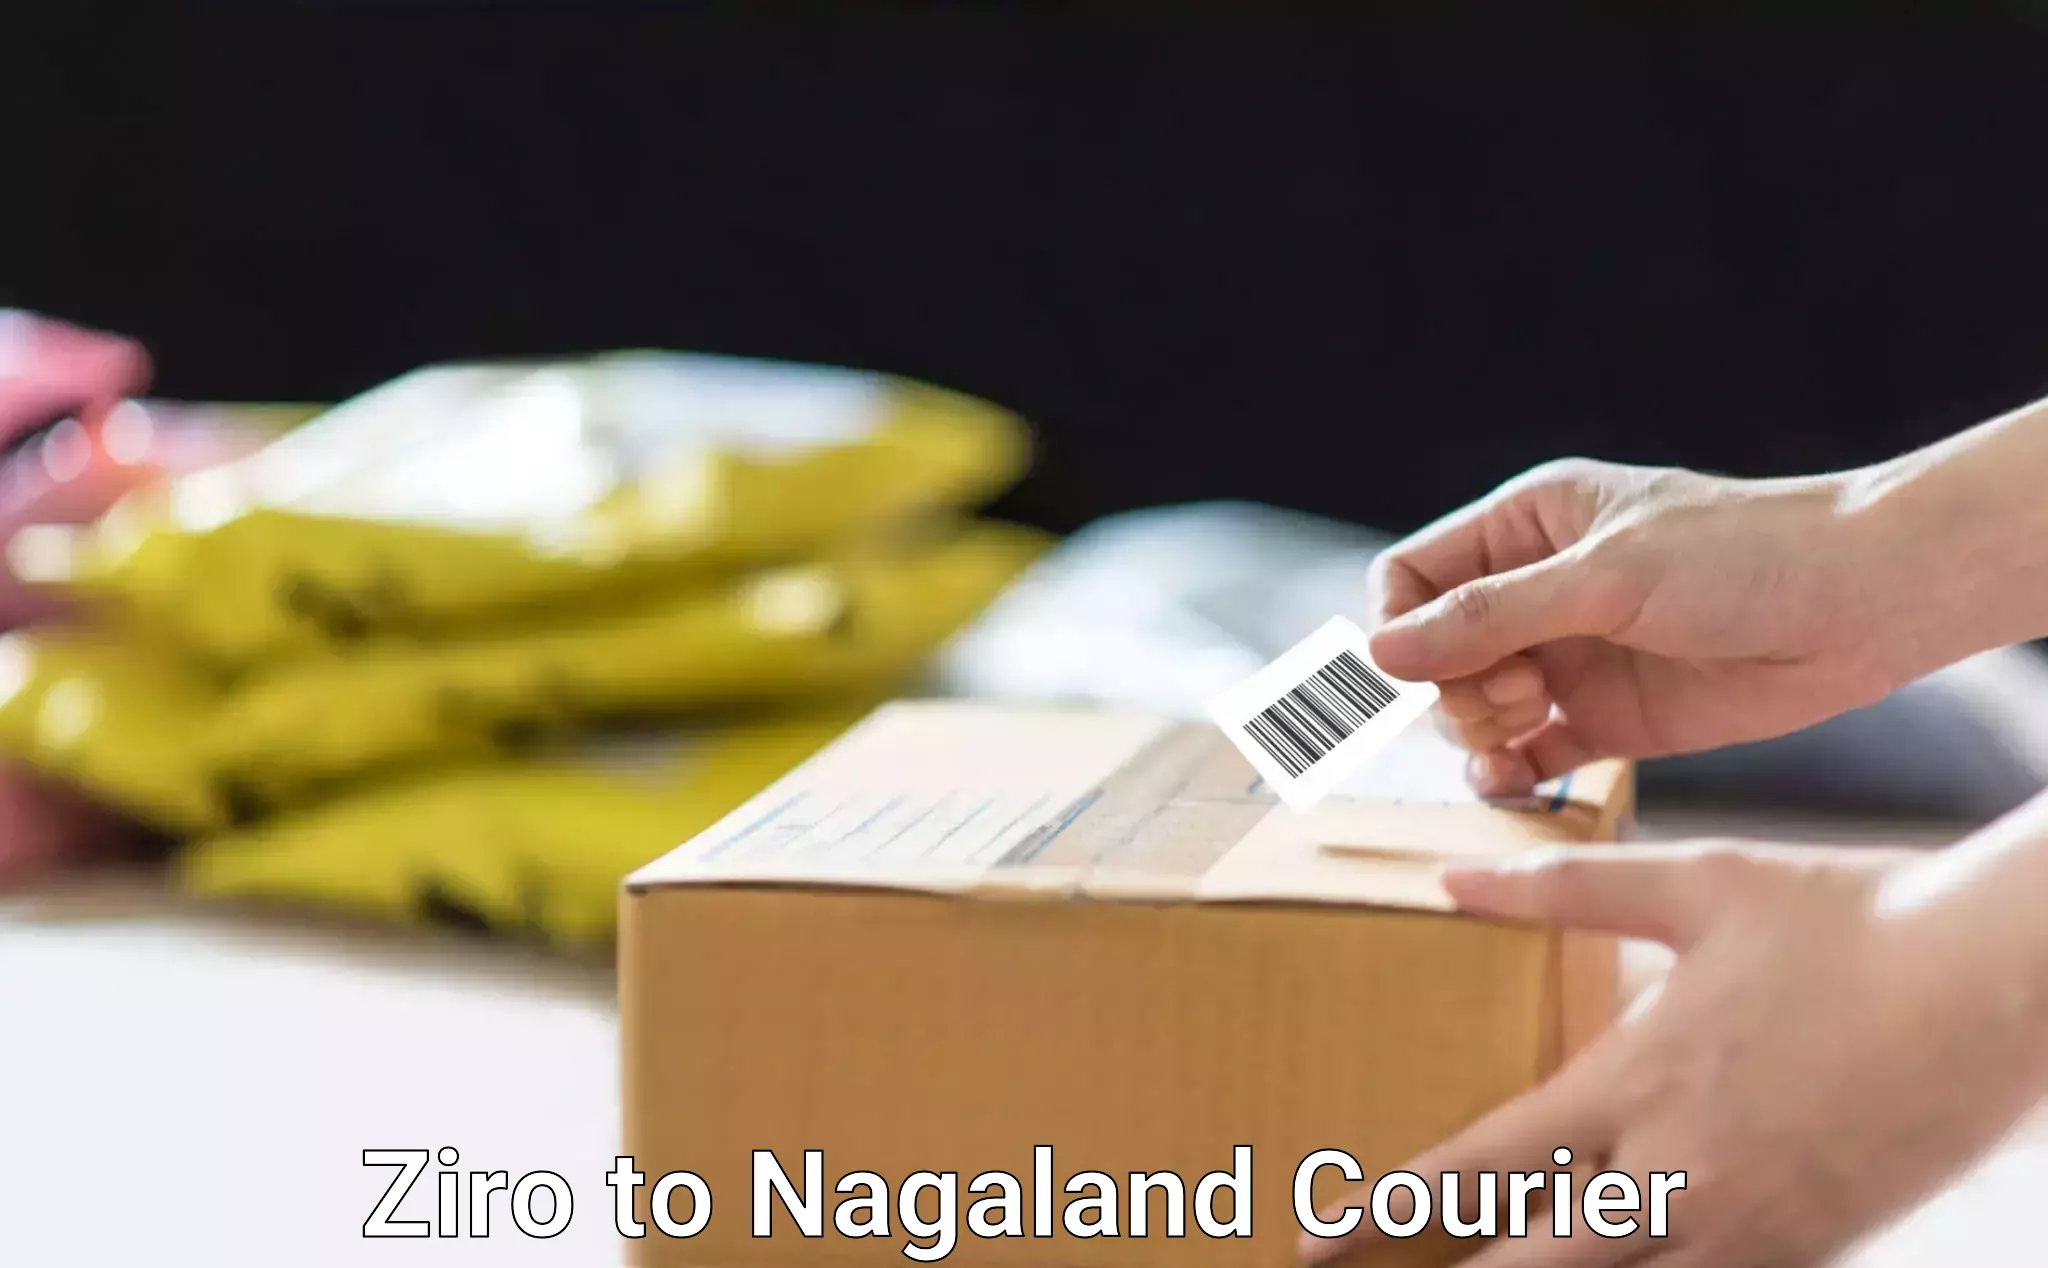 Fast-track shipping solutions Ziro to Wokha